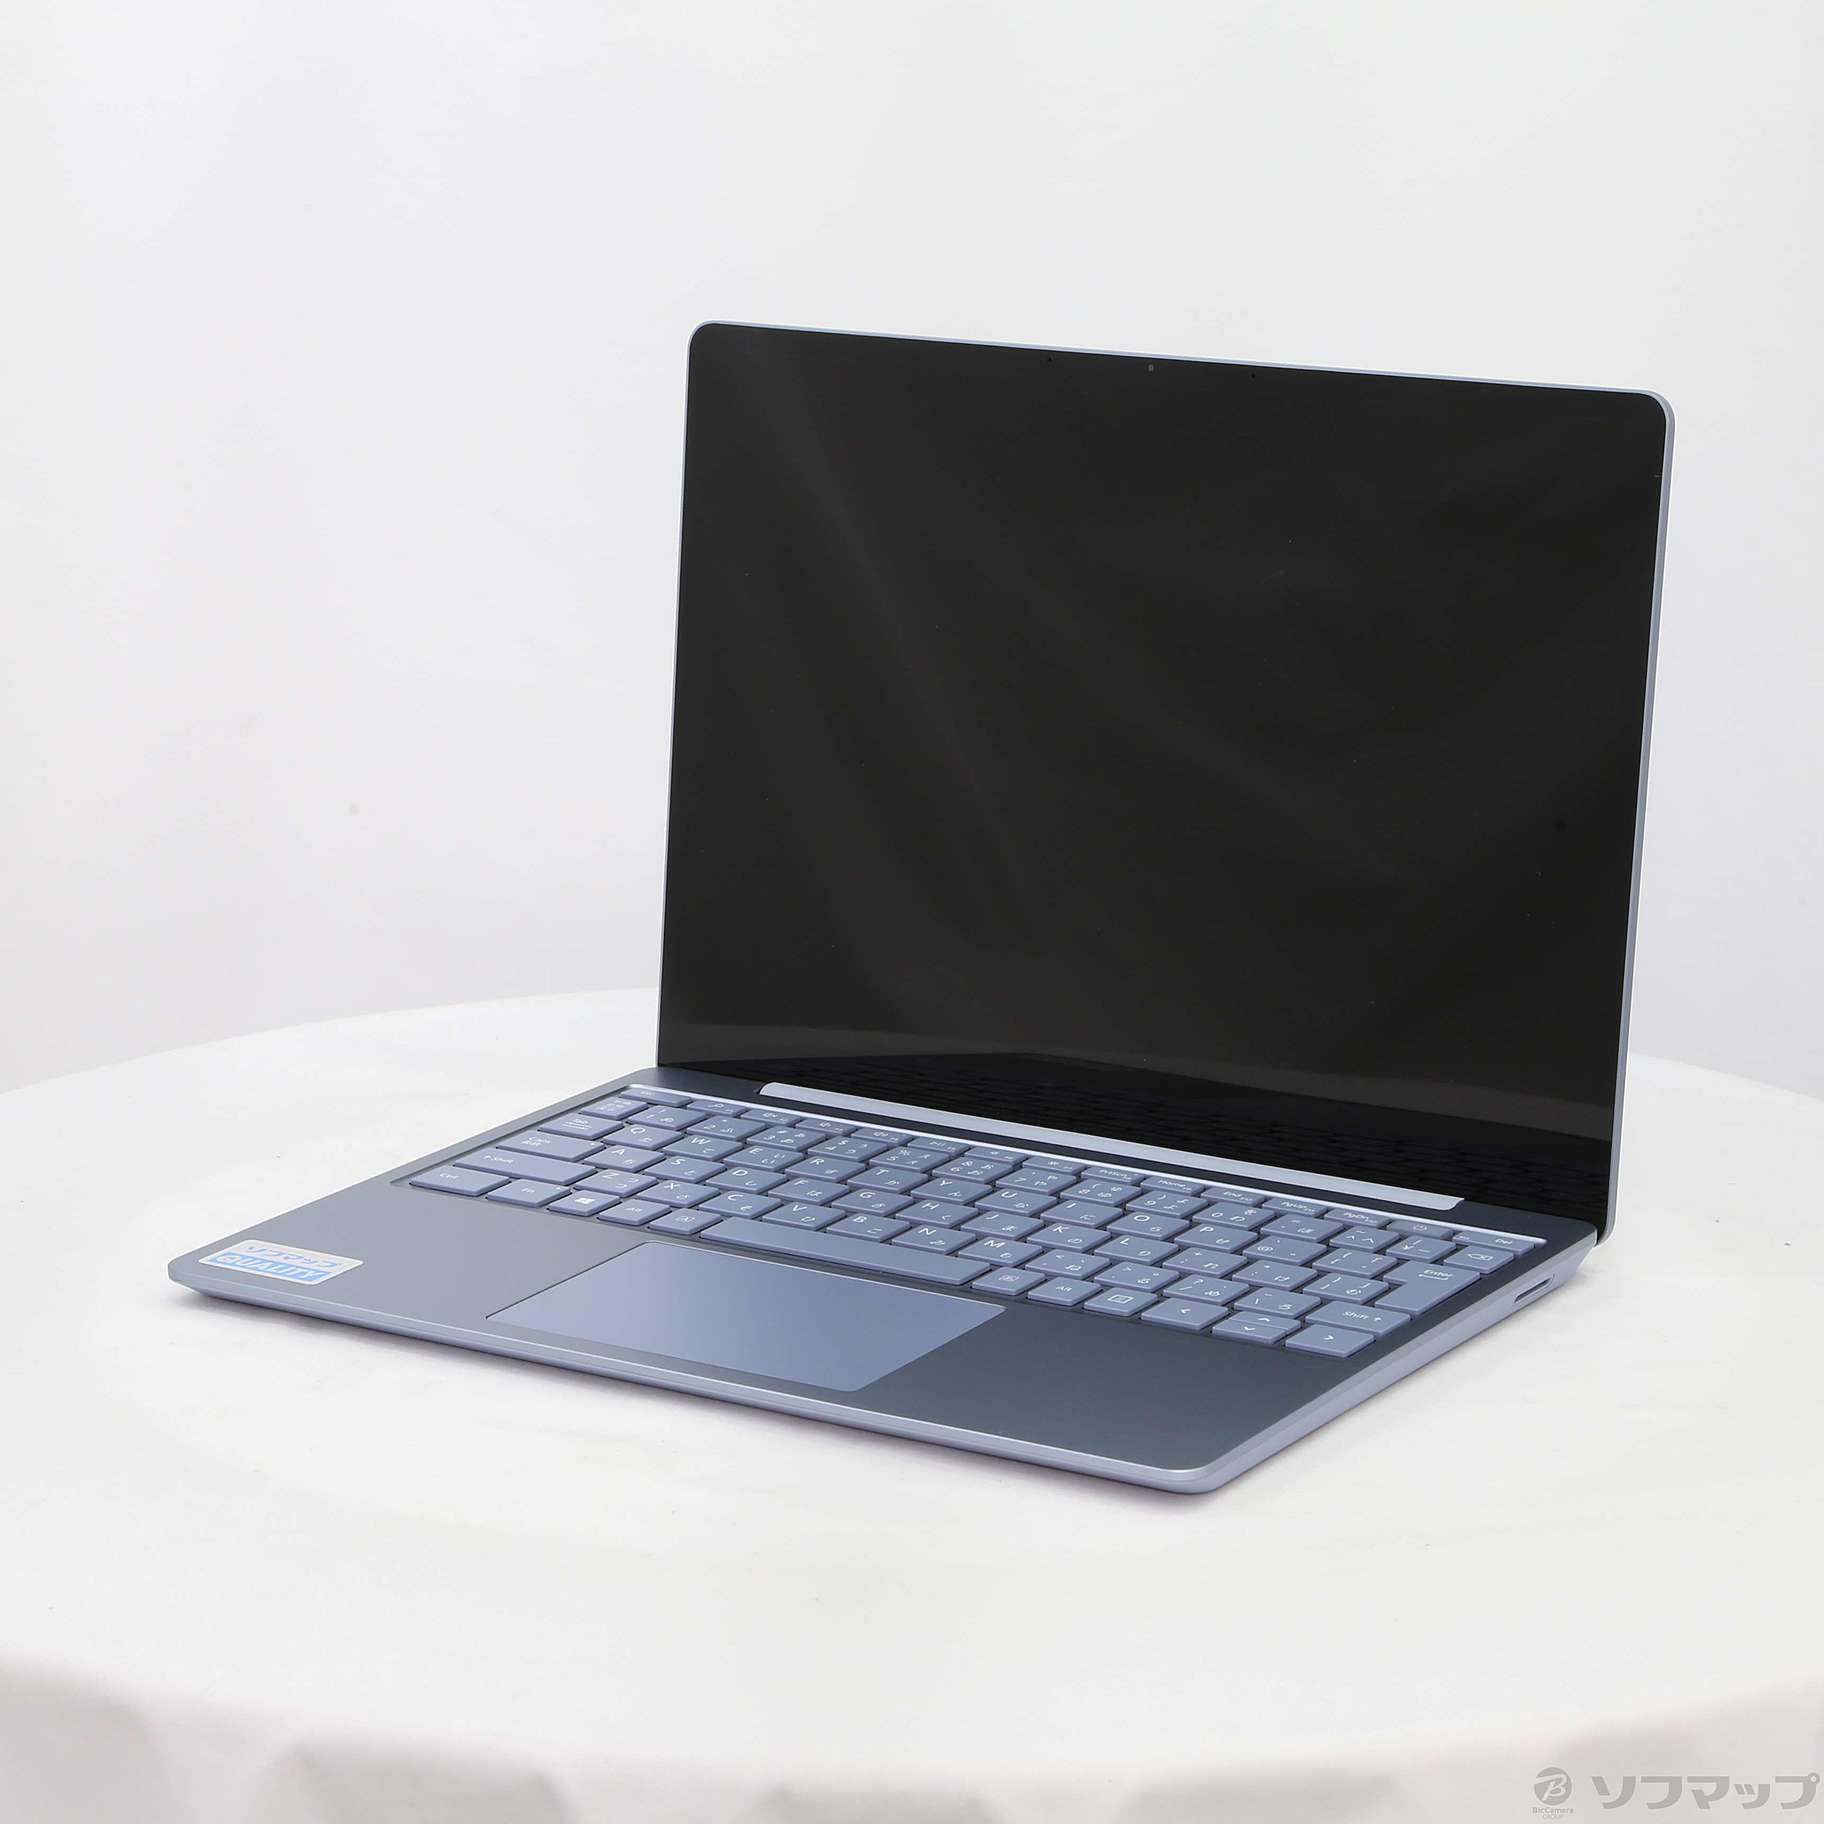 Surface Laptop Go THH-00034 [アイス ブルー]